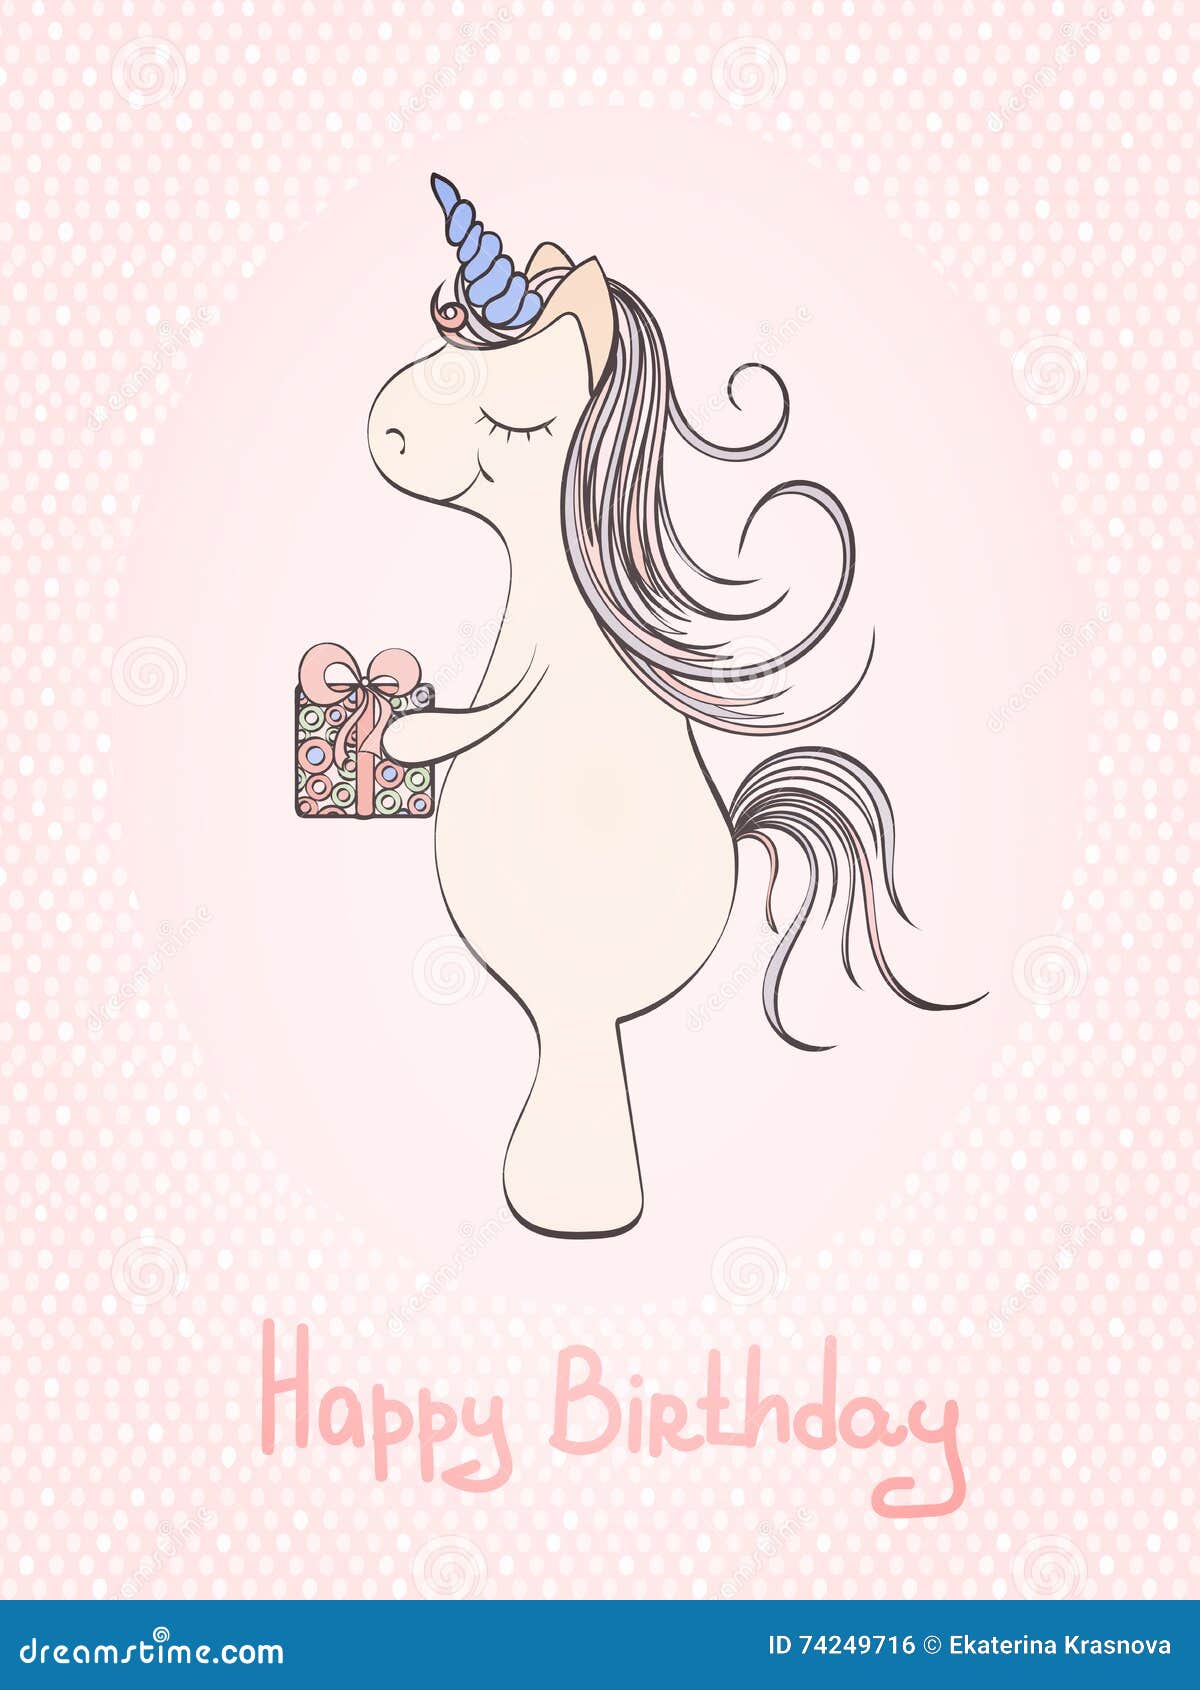 Biglietto Di Auguri Per Il Compleanno Dell'unicorno 